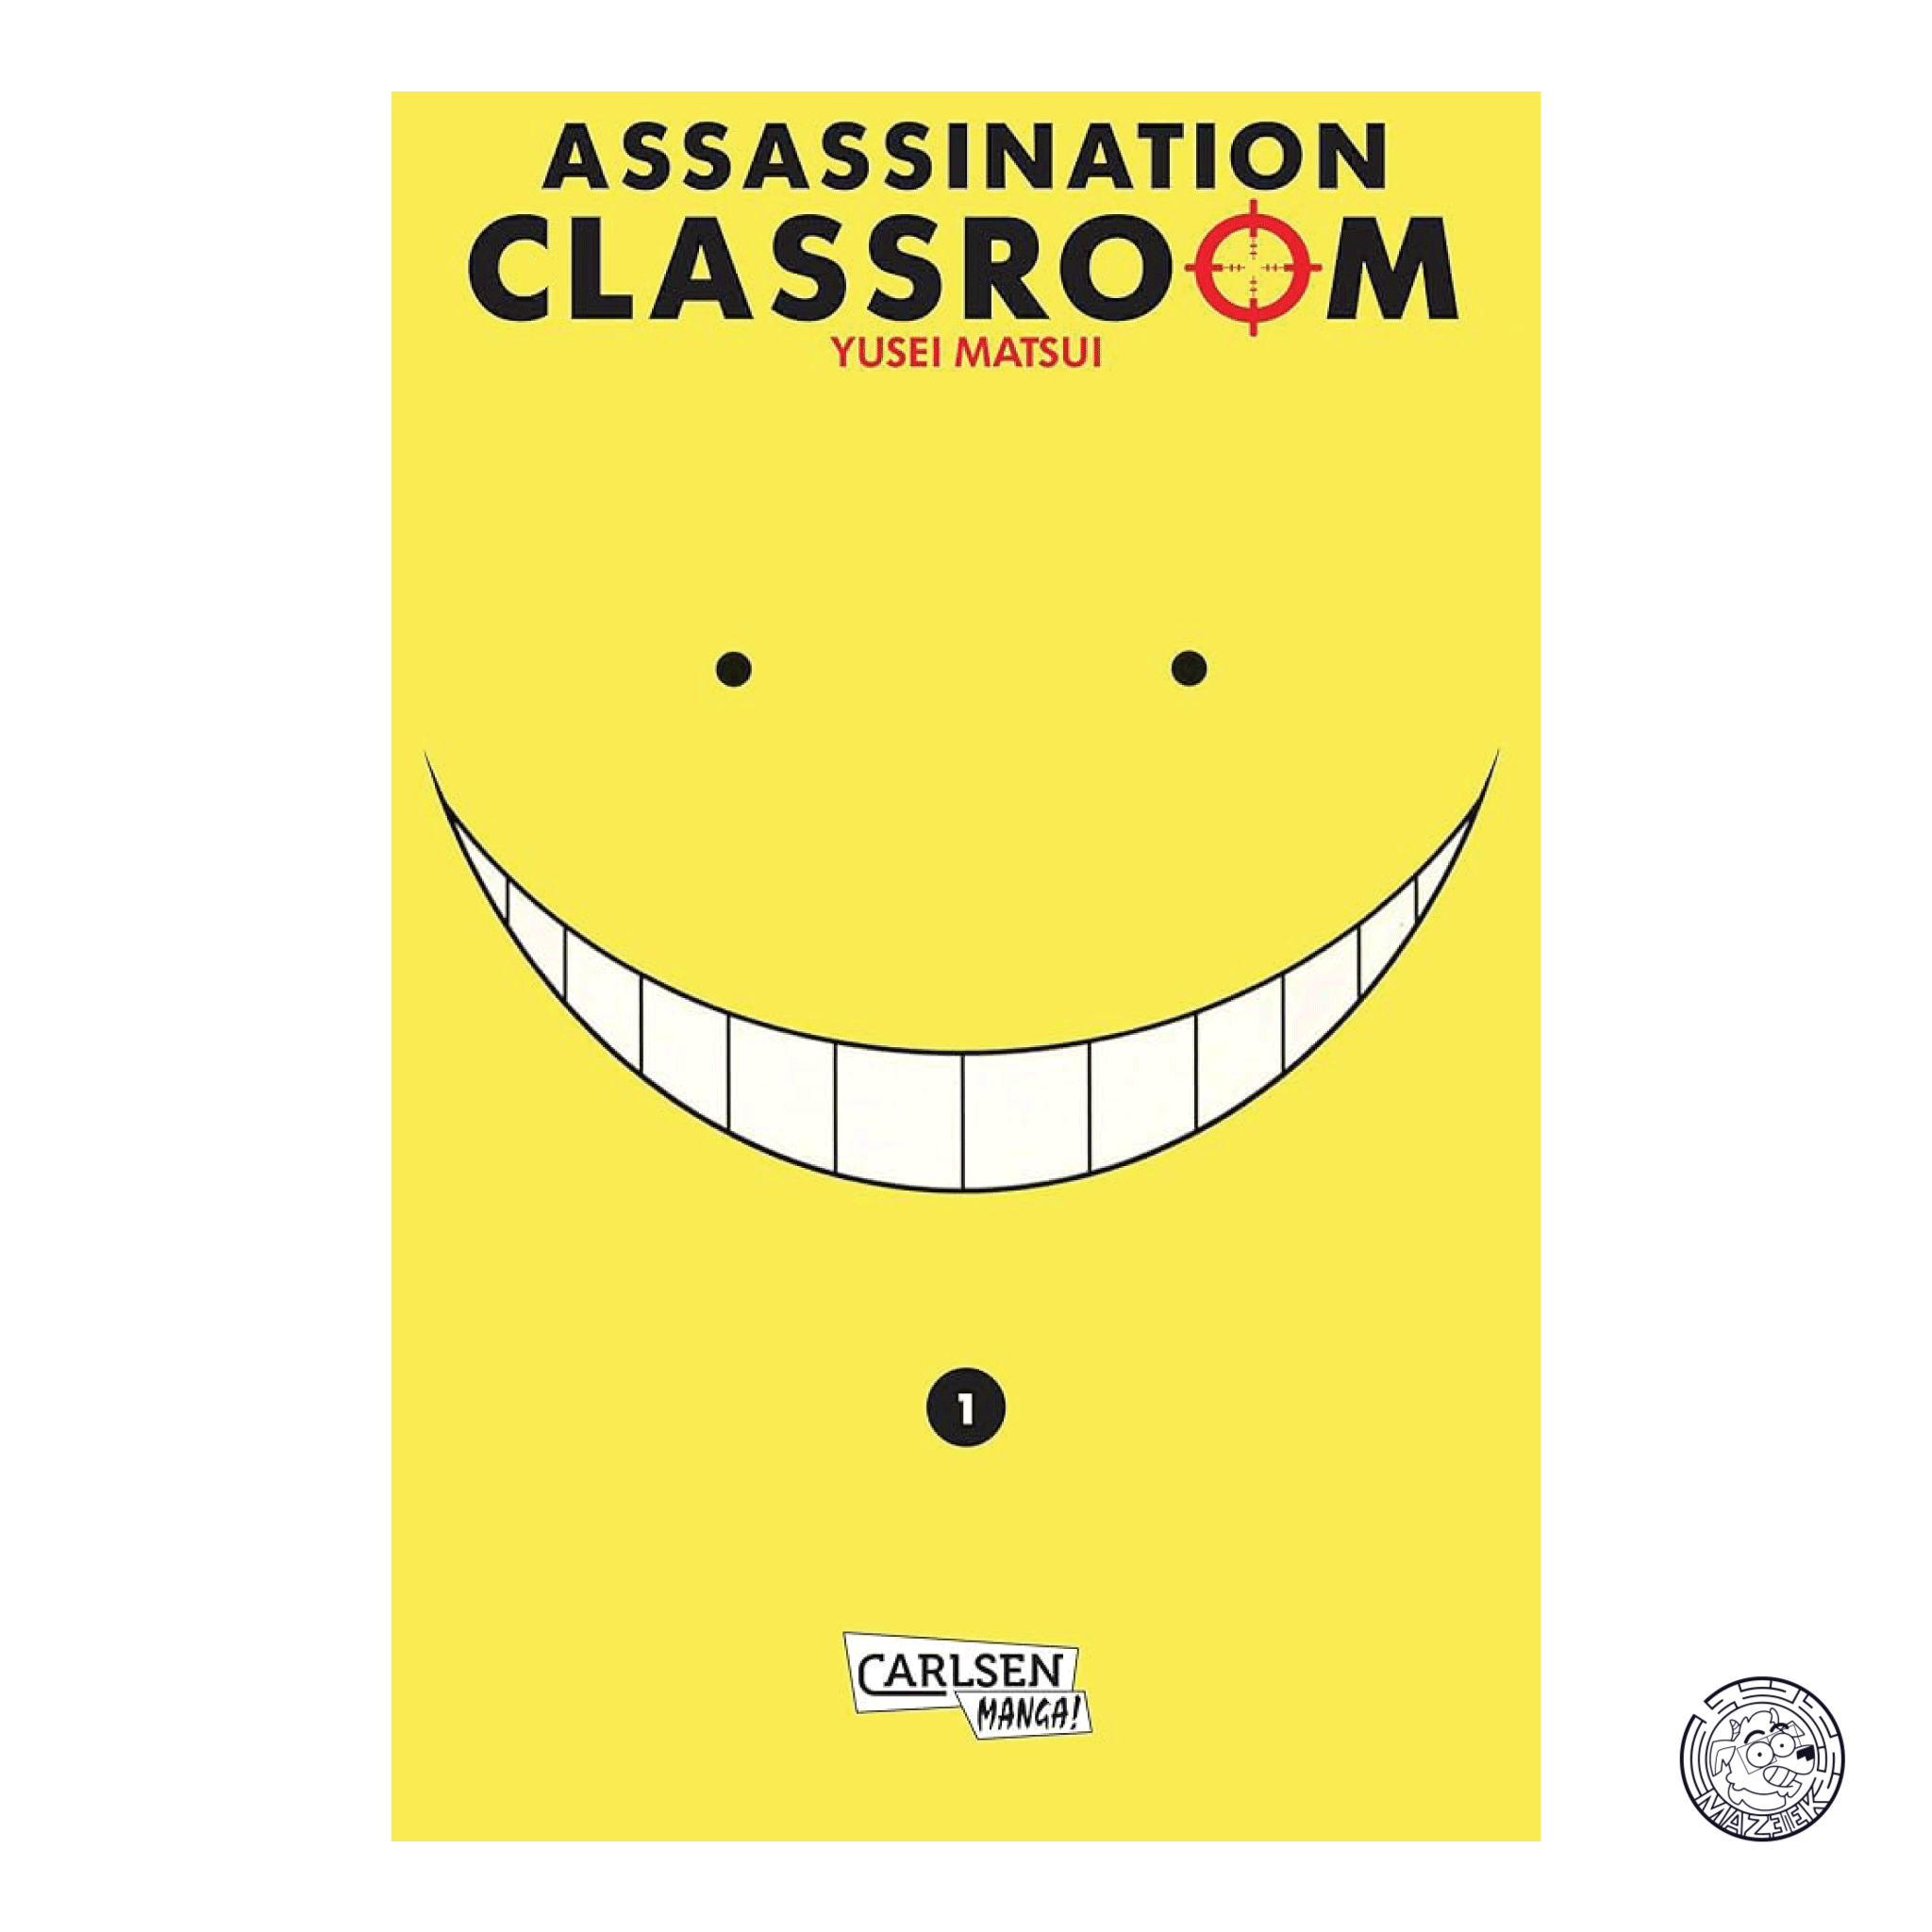 Assassination Classroom 01 - Reprint 2